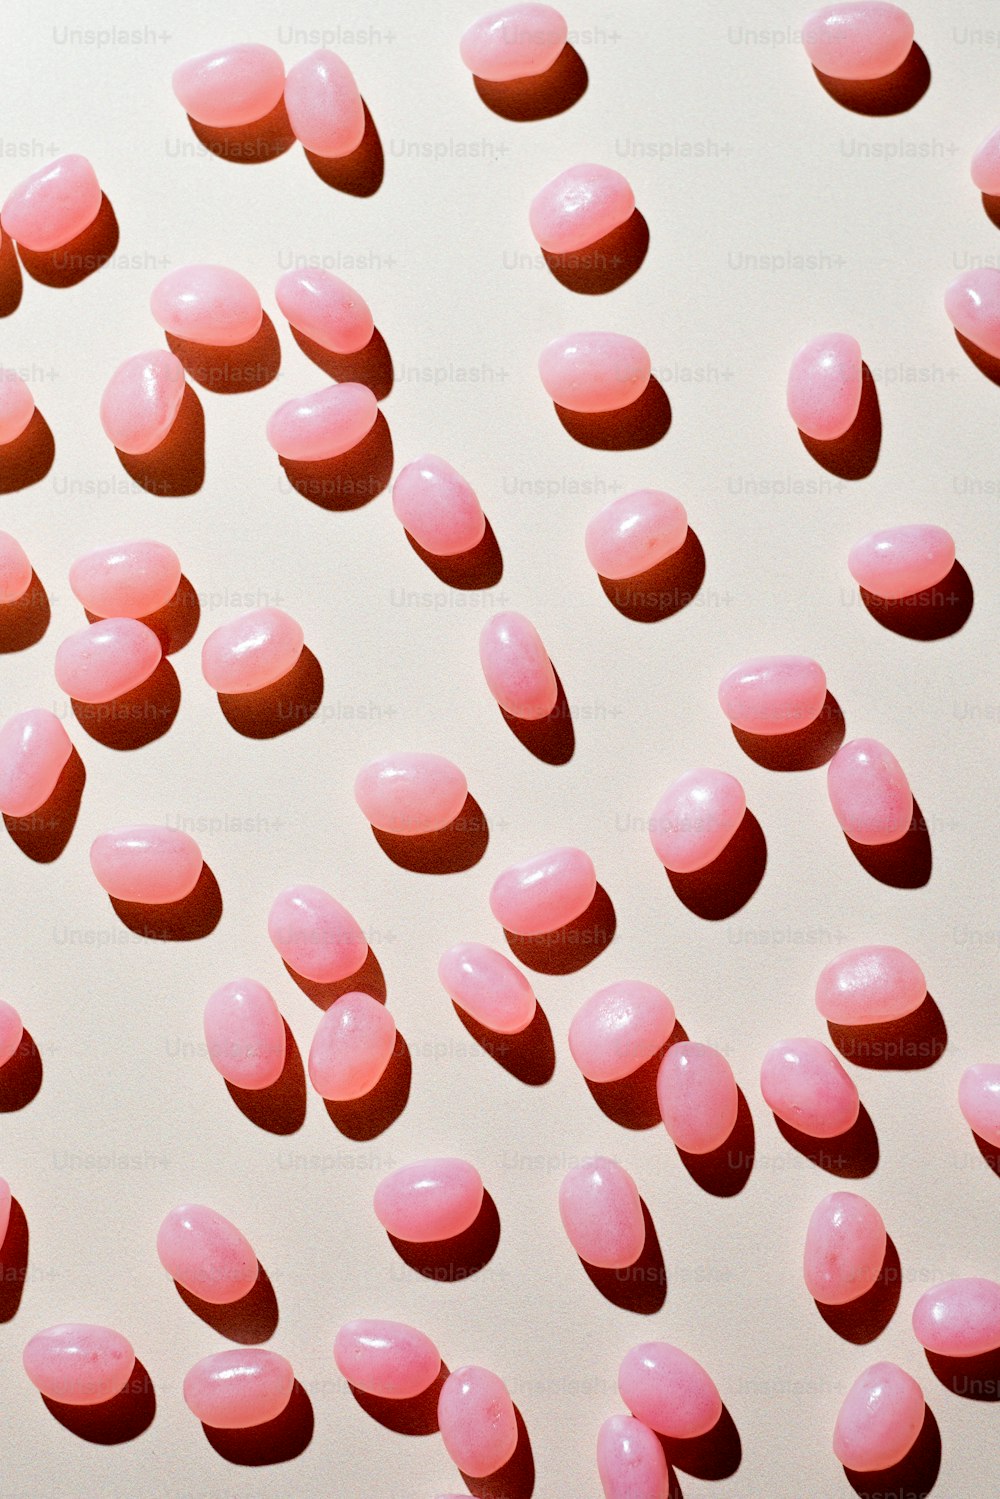 Un sacco di pillole rosa su una superficie bianca